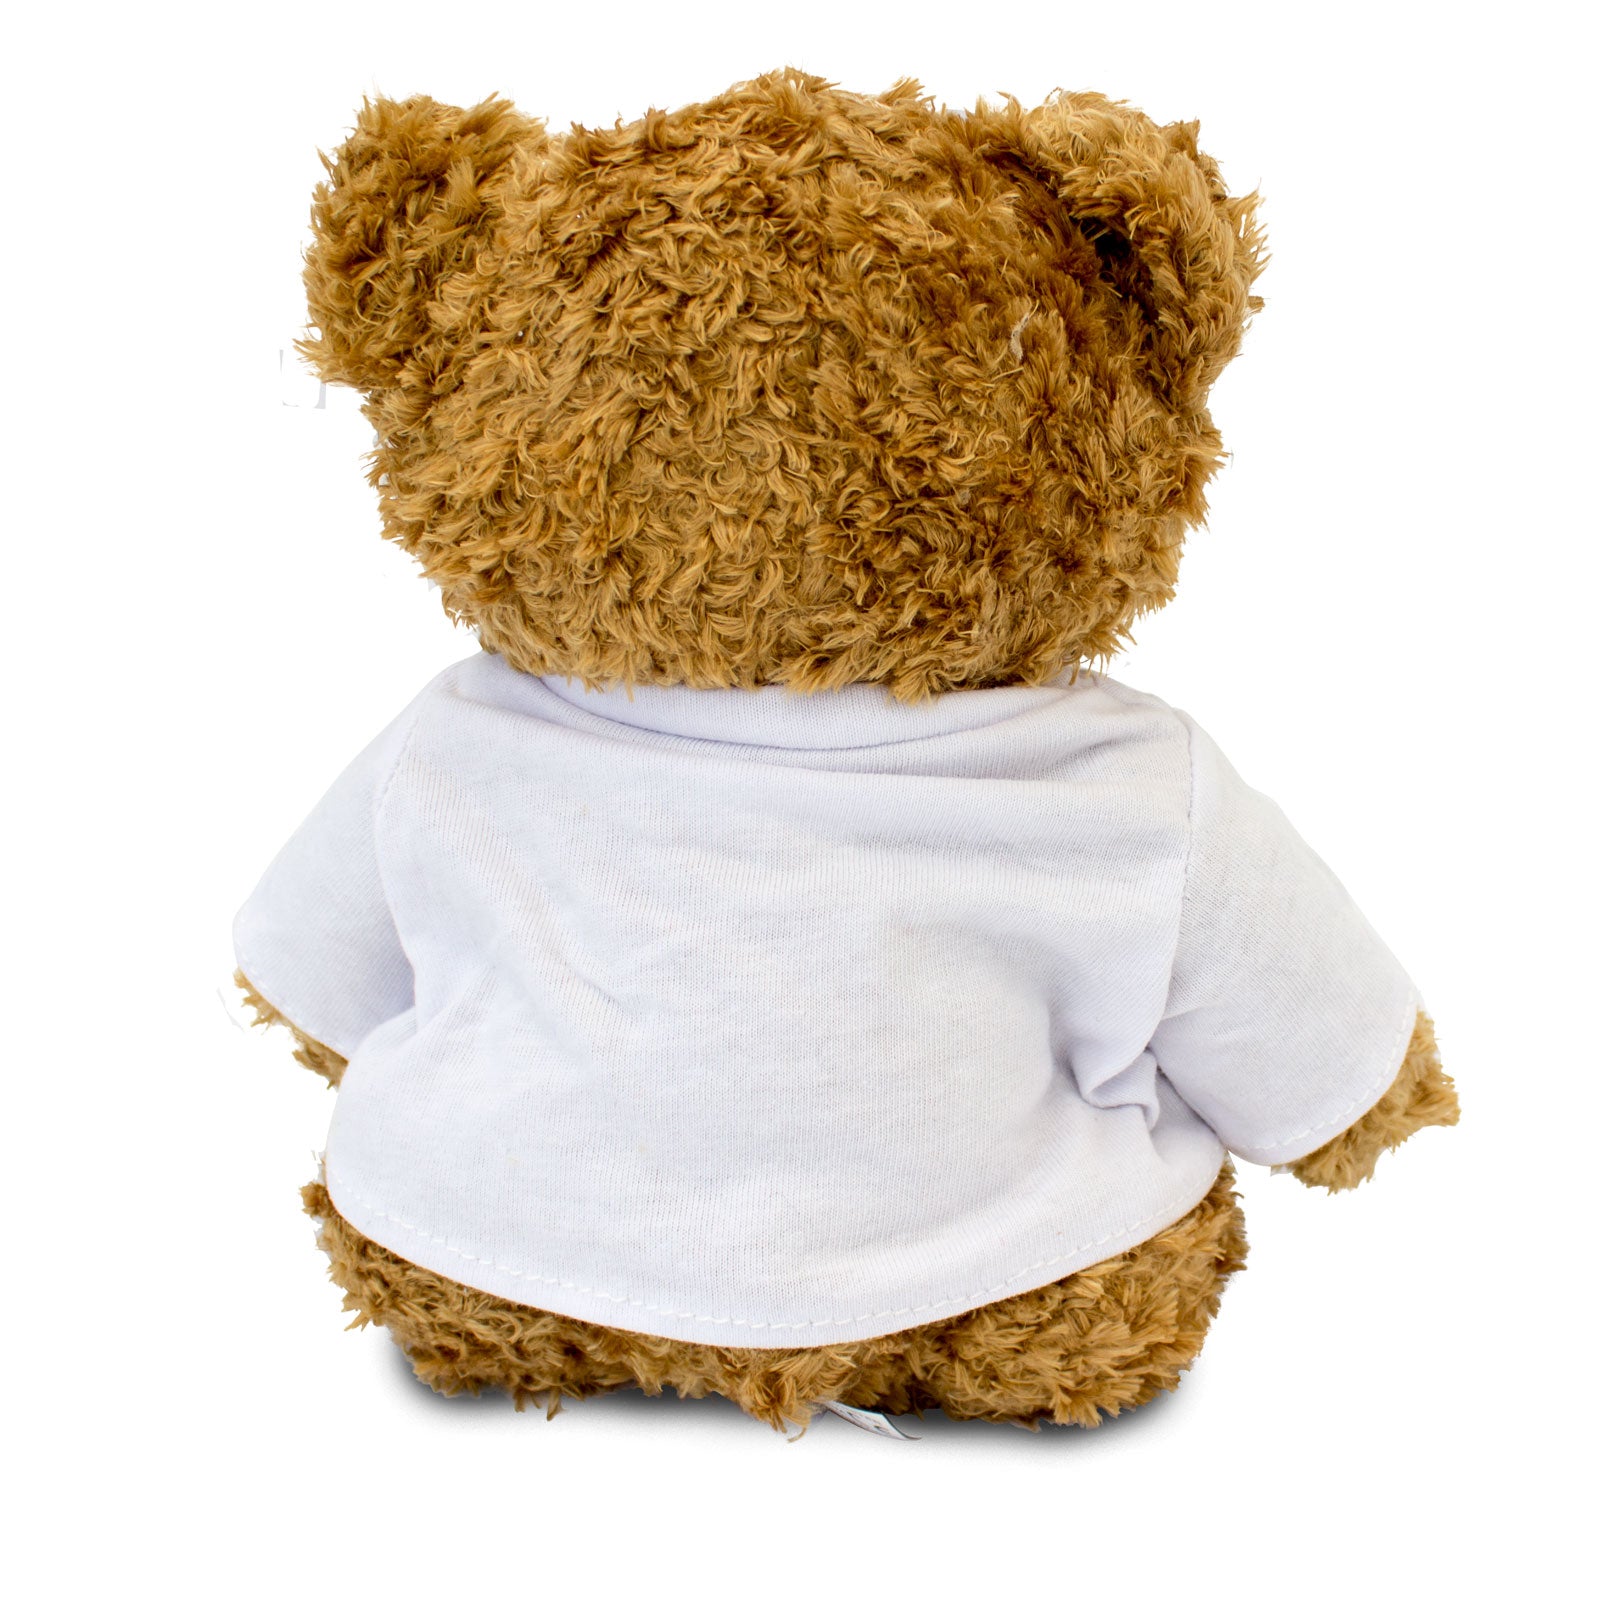 Get Well Soon Johnathan - Teddy Bear